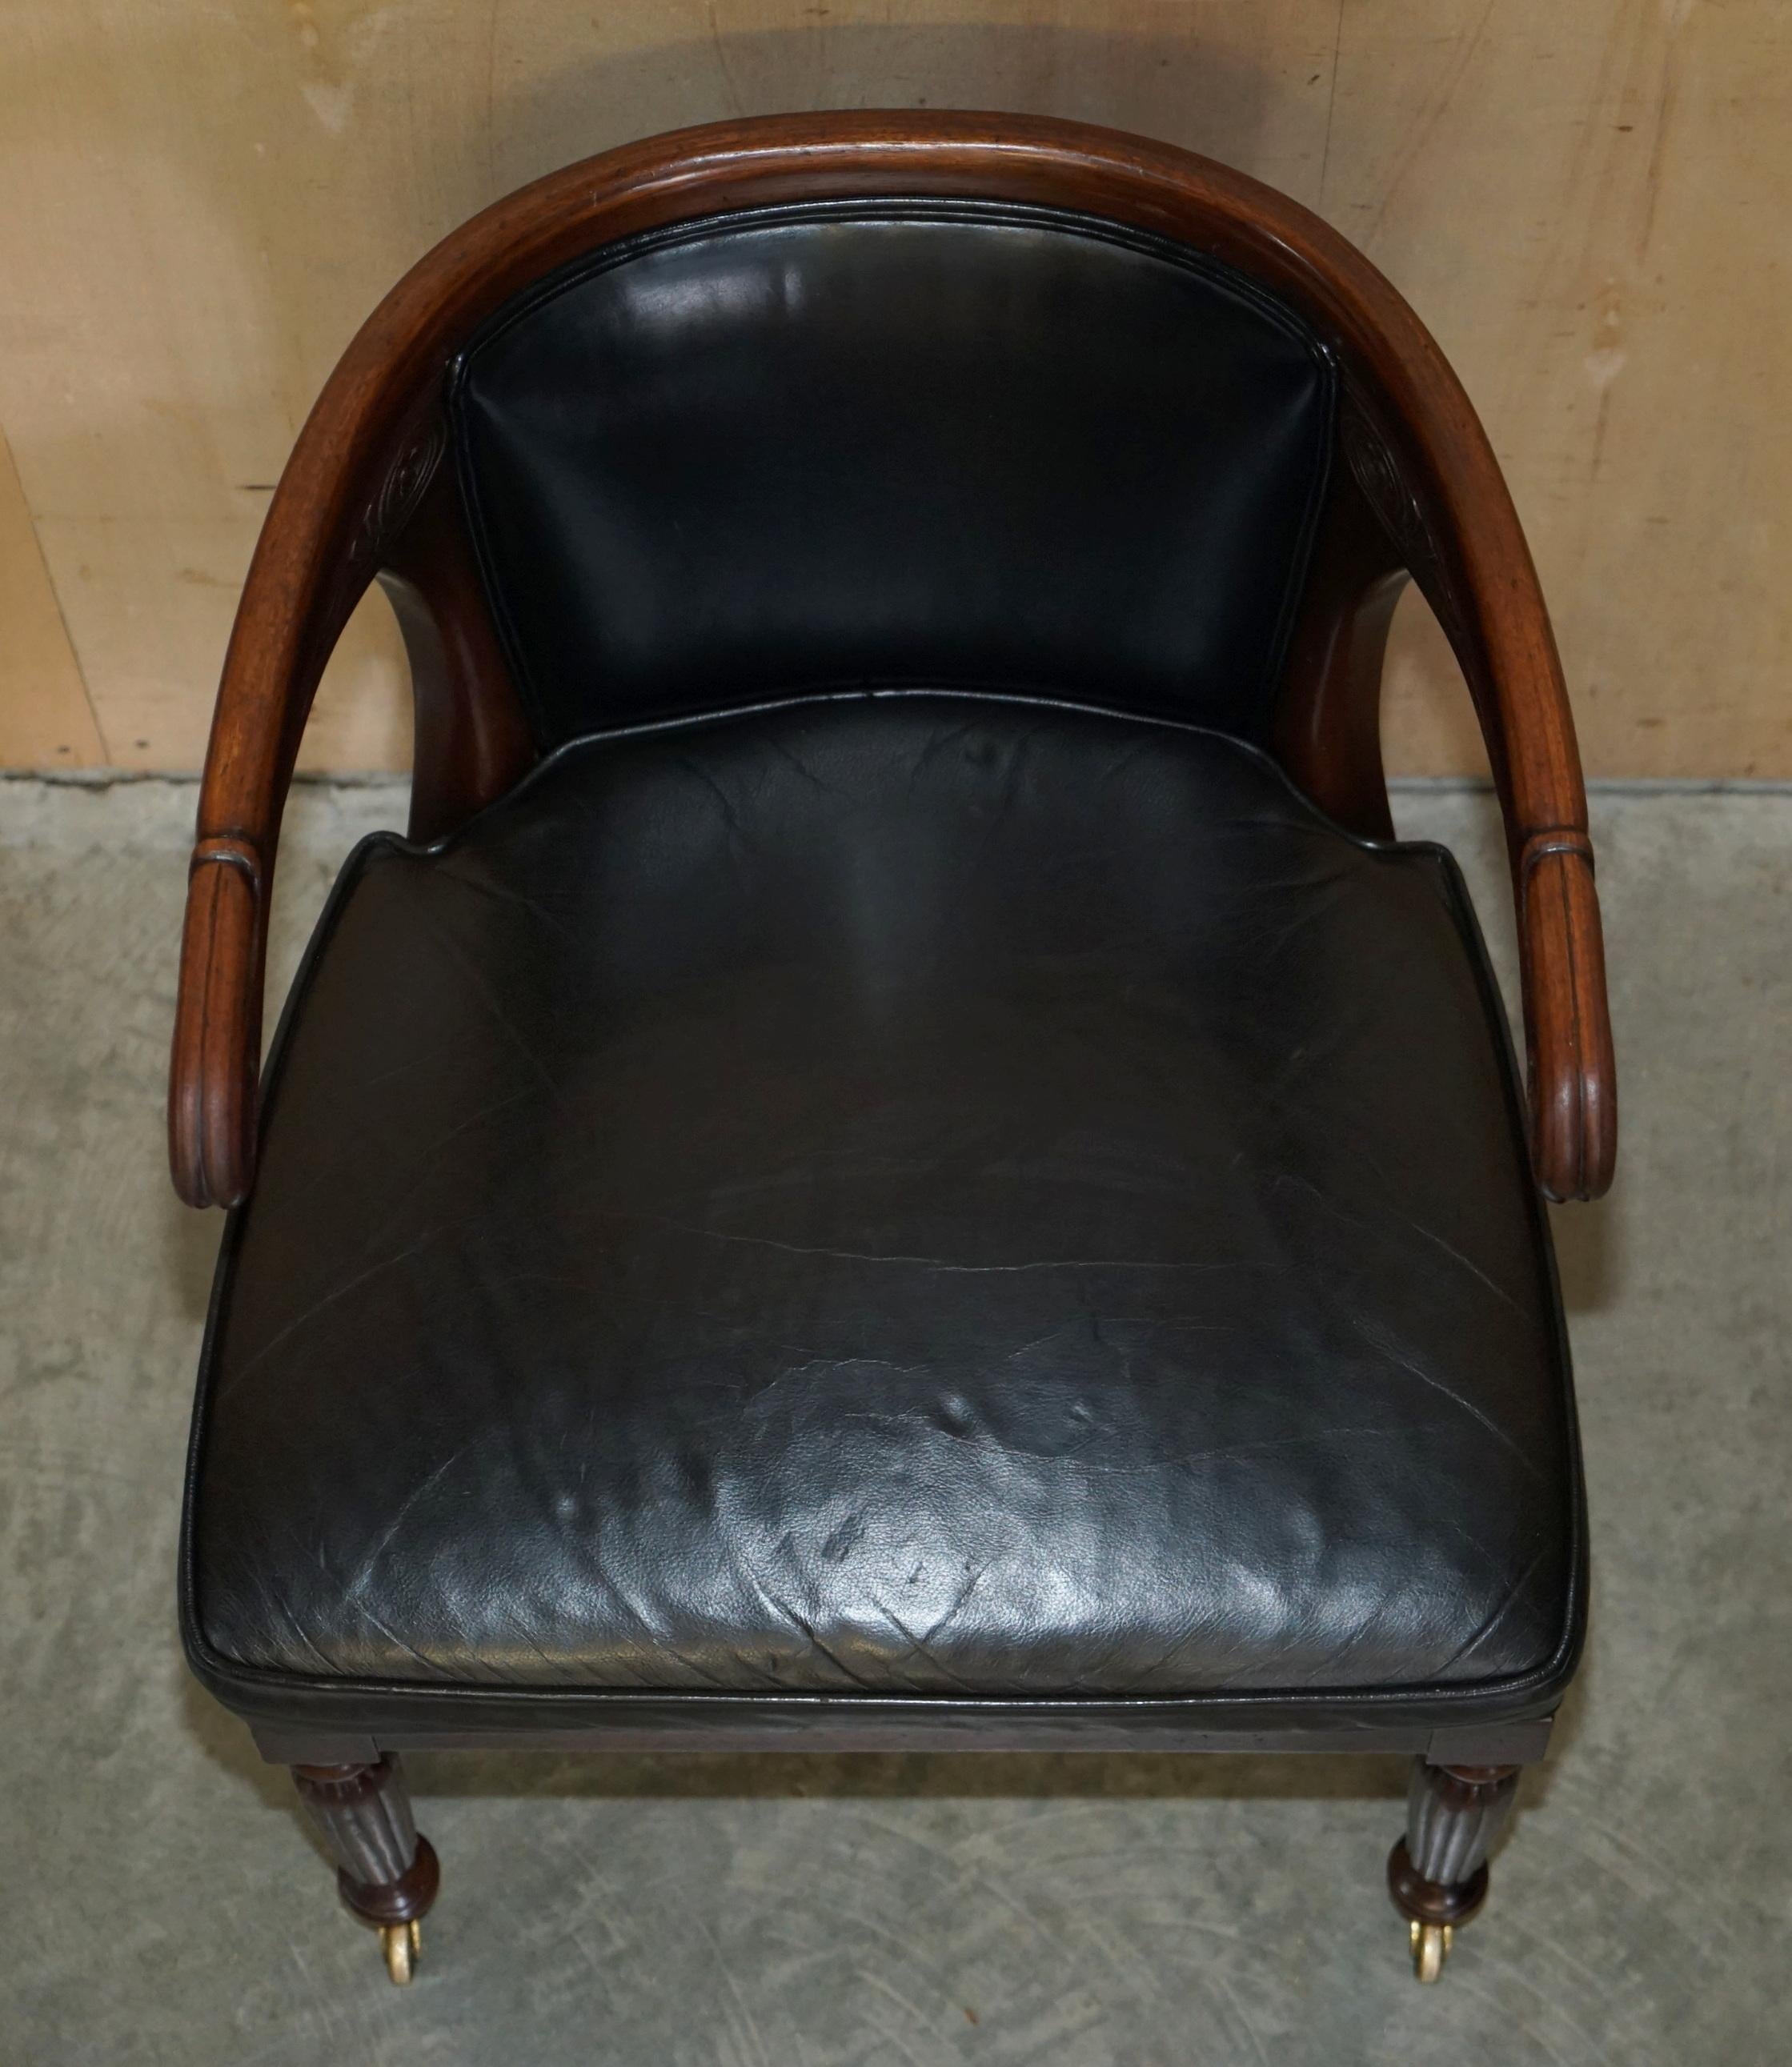 Antique Original Regency 1815 Black Leather Hardwood Horseshoe Office Desk Chair For Sale 6